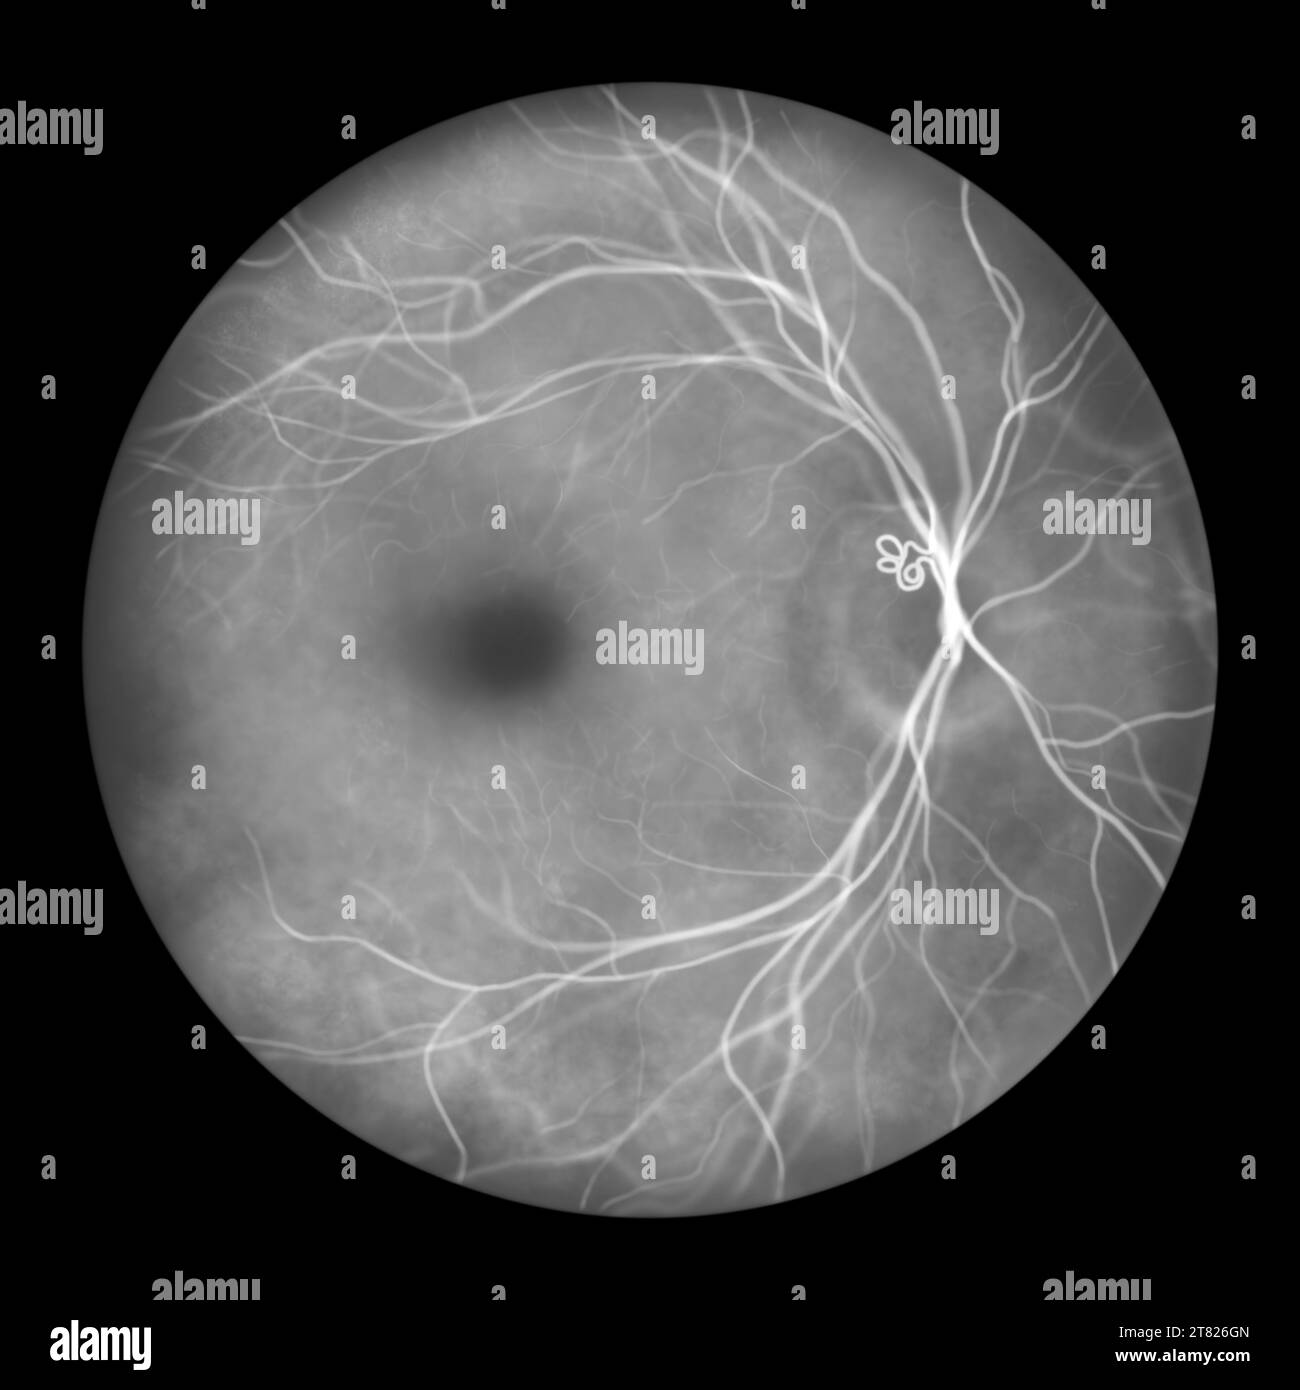 Prepapillary vascular loop on the retina, illustration Stock Photo